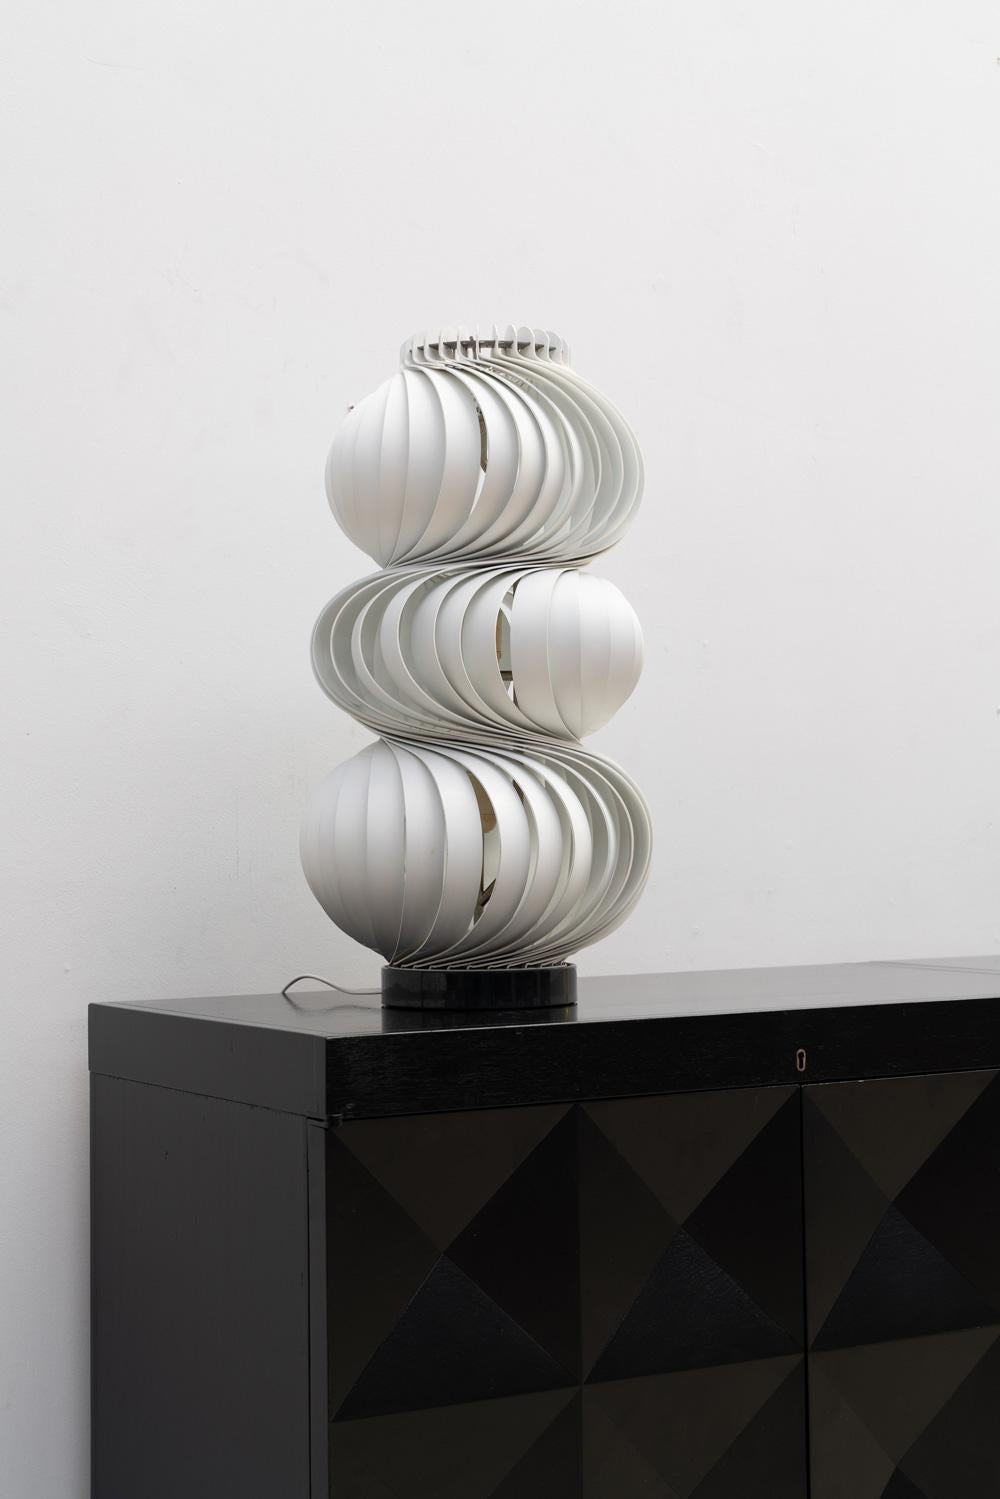 Olaf von Bohr table lamp designed in 1968.
